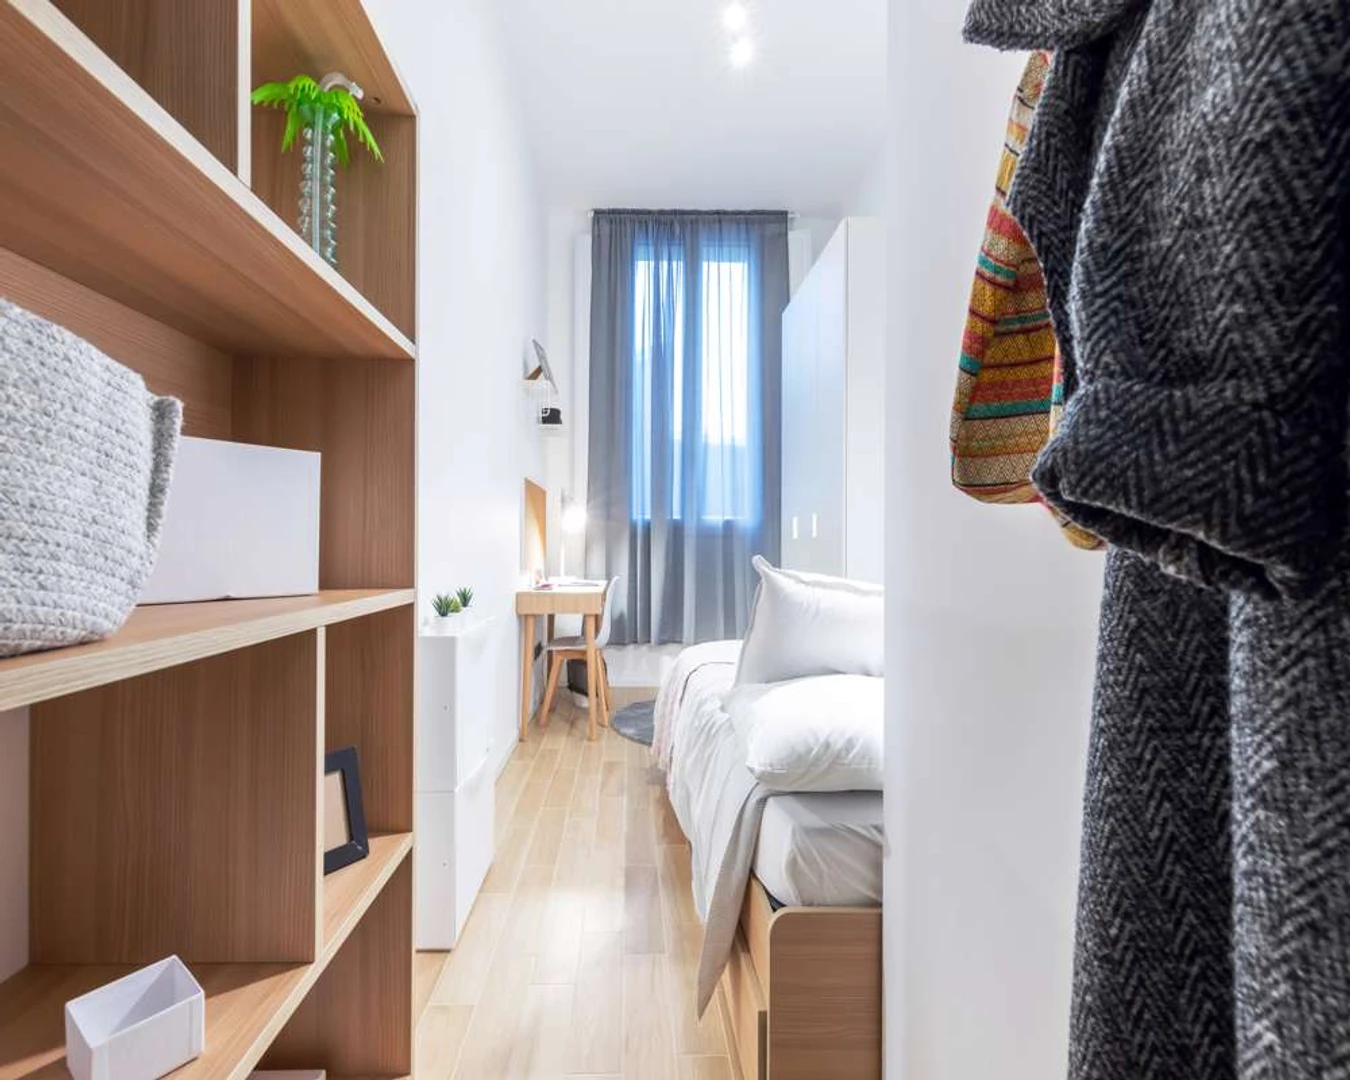 Alquiler de habitaciones por meses en Turín